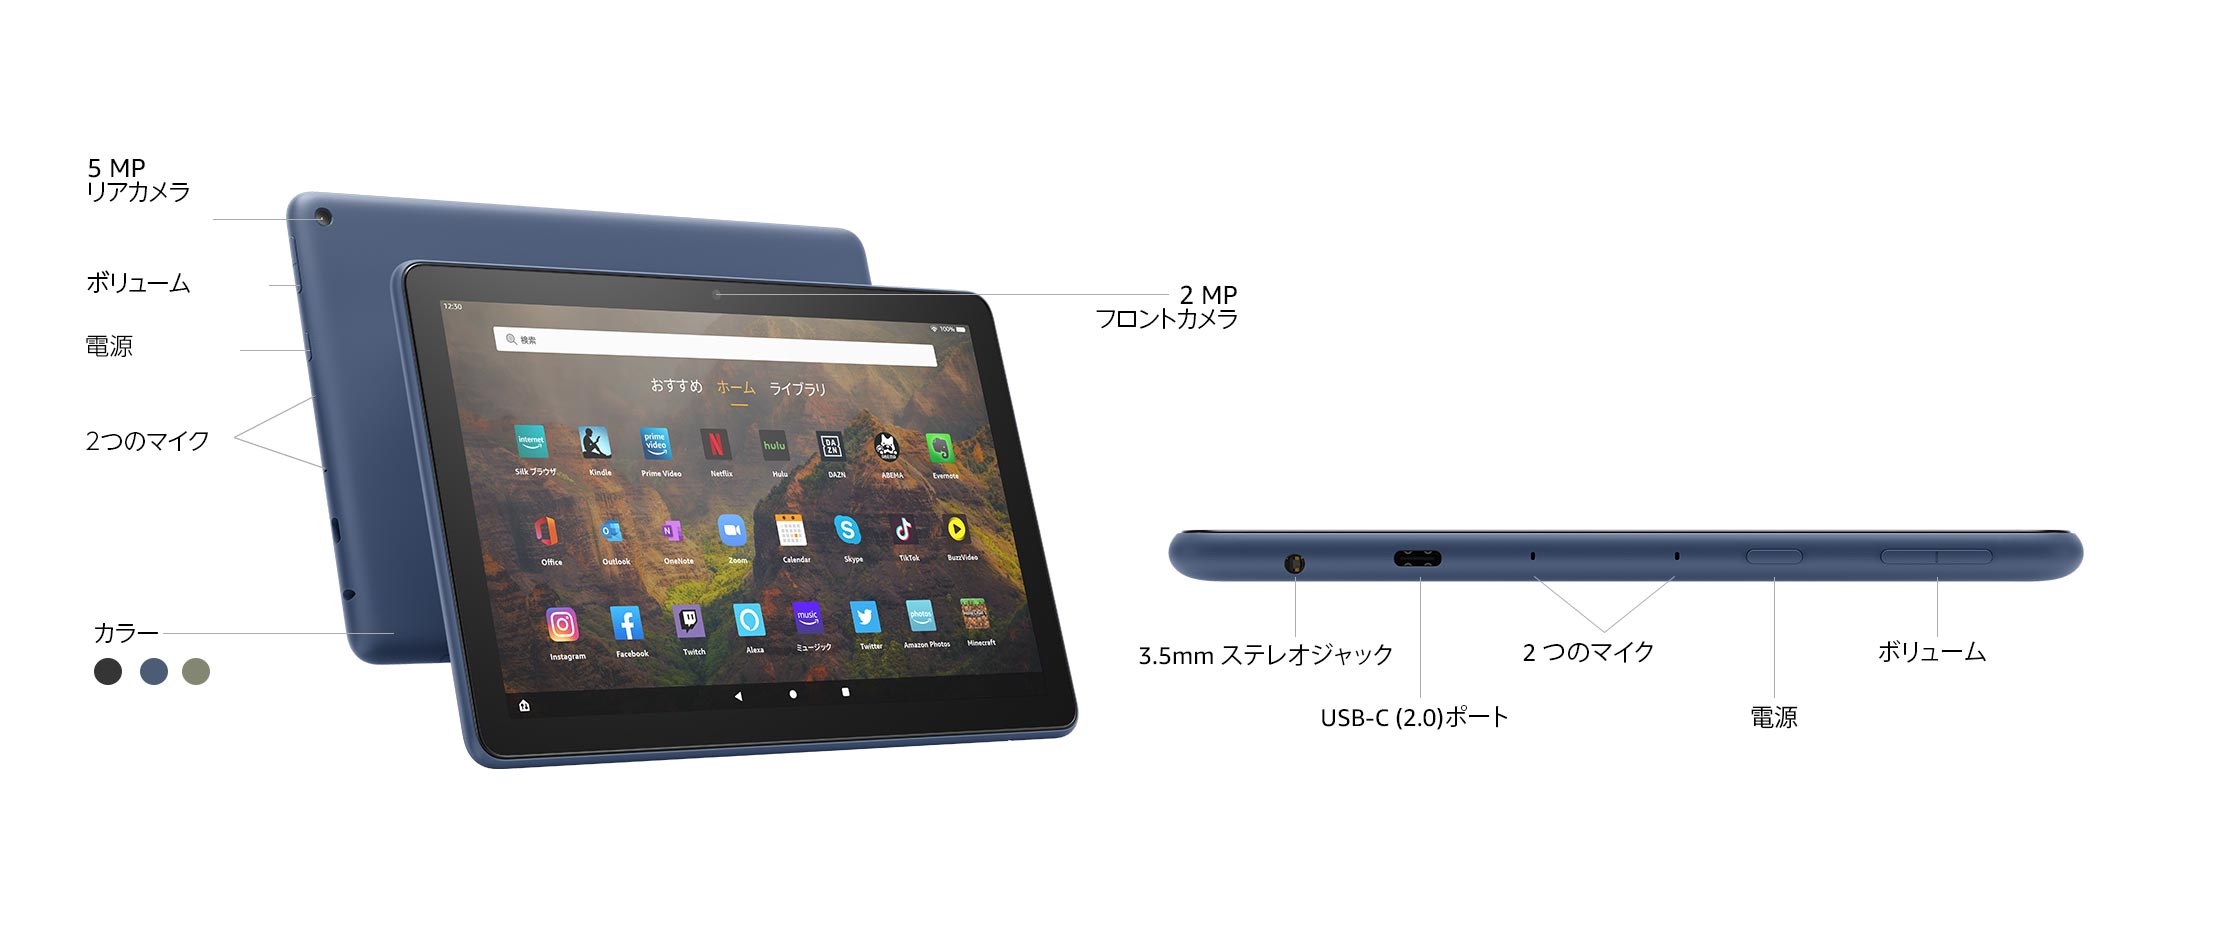 Amazon、新世代タブレット「Fire HD 10」を発表！ワイヤレス充電対応のPlusやKidsも。日本では5月26日発売で予約中。価格は